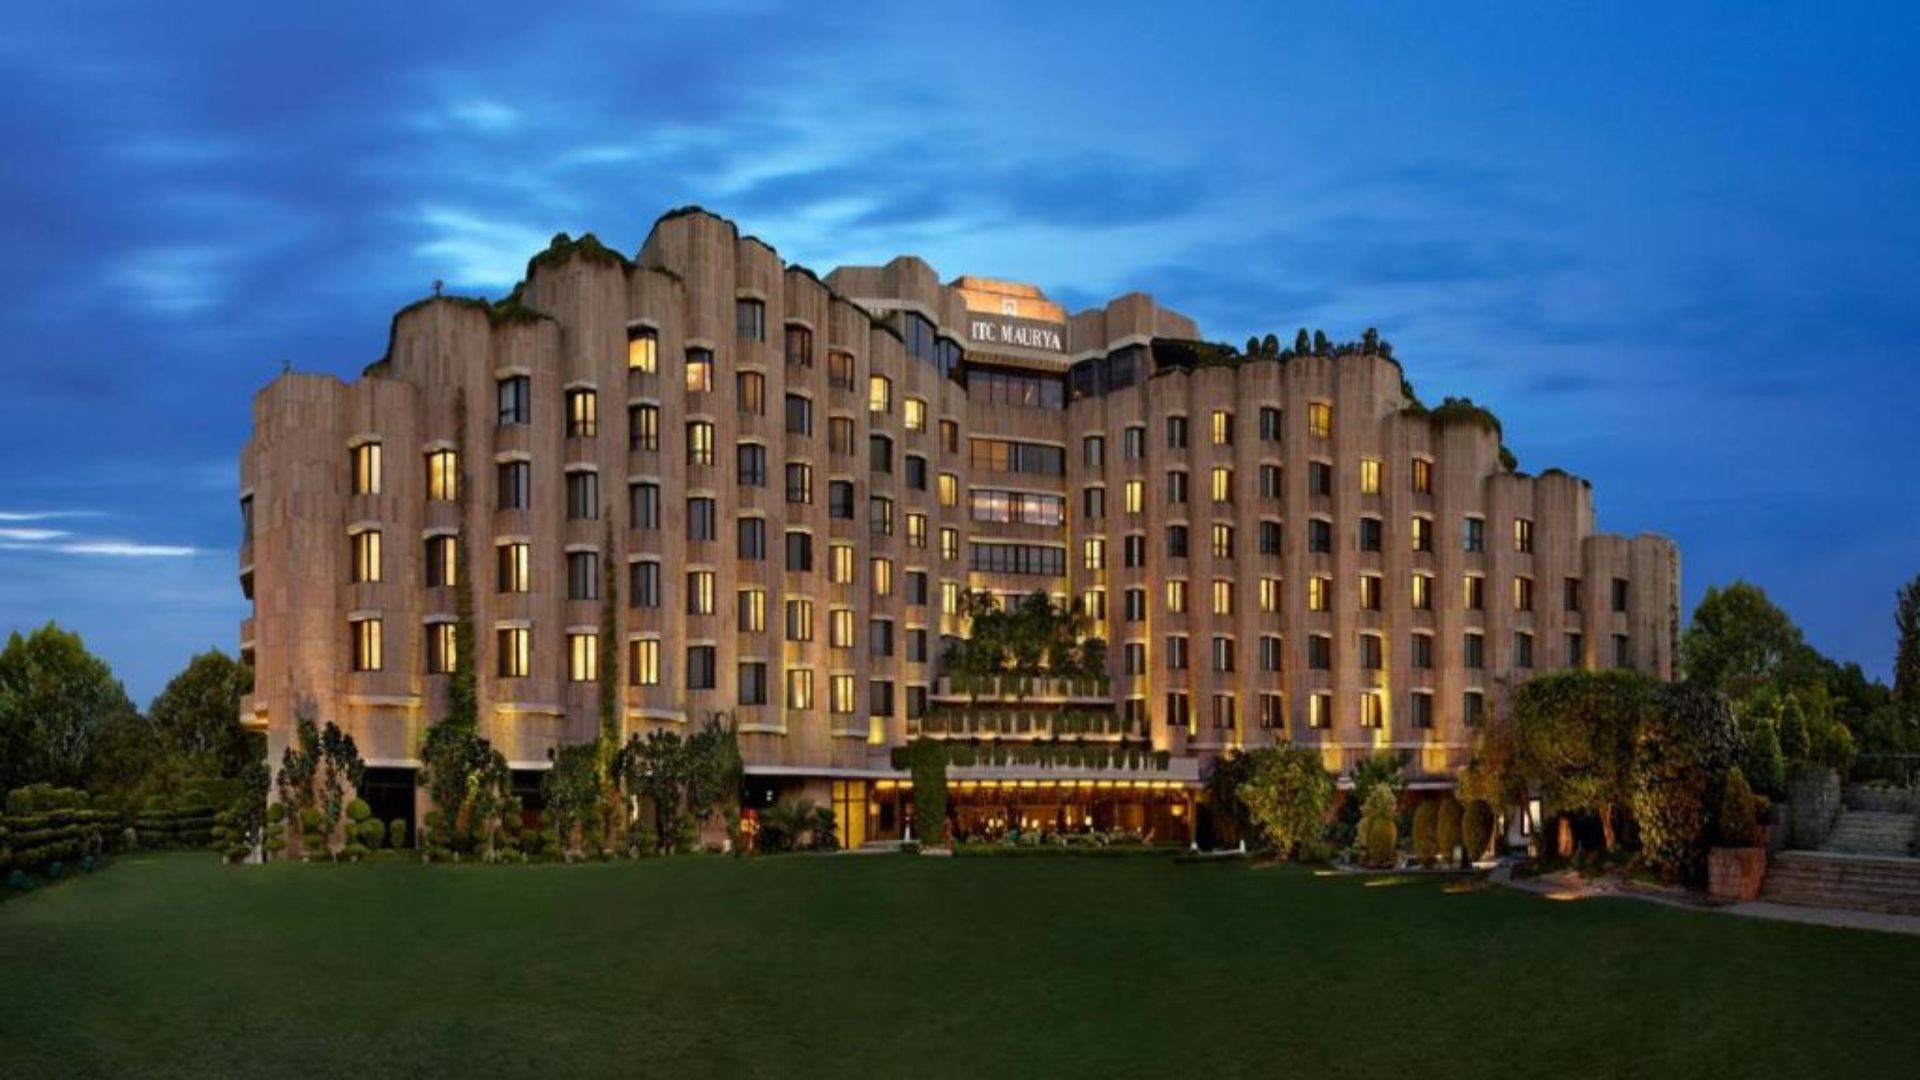 delhi tourism hotels